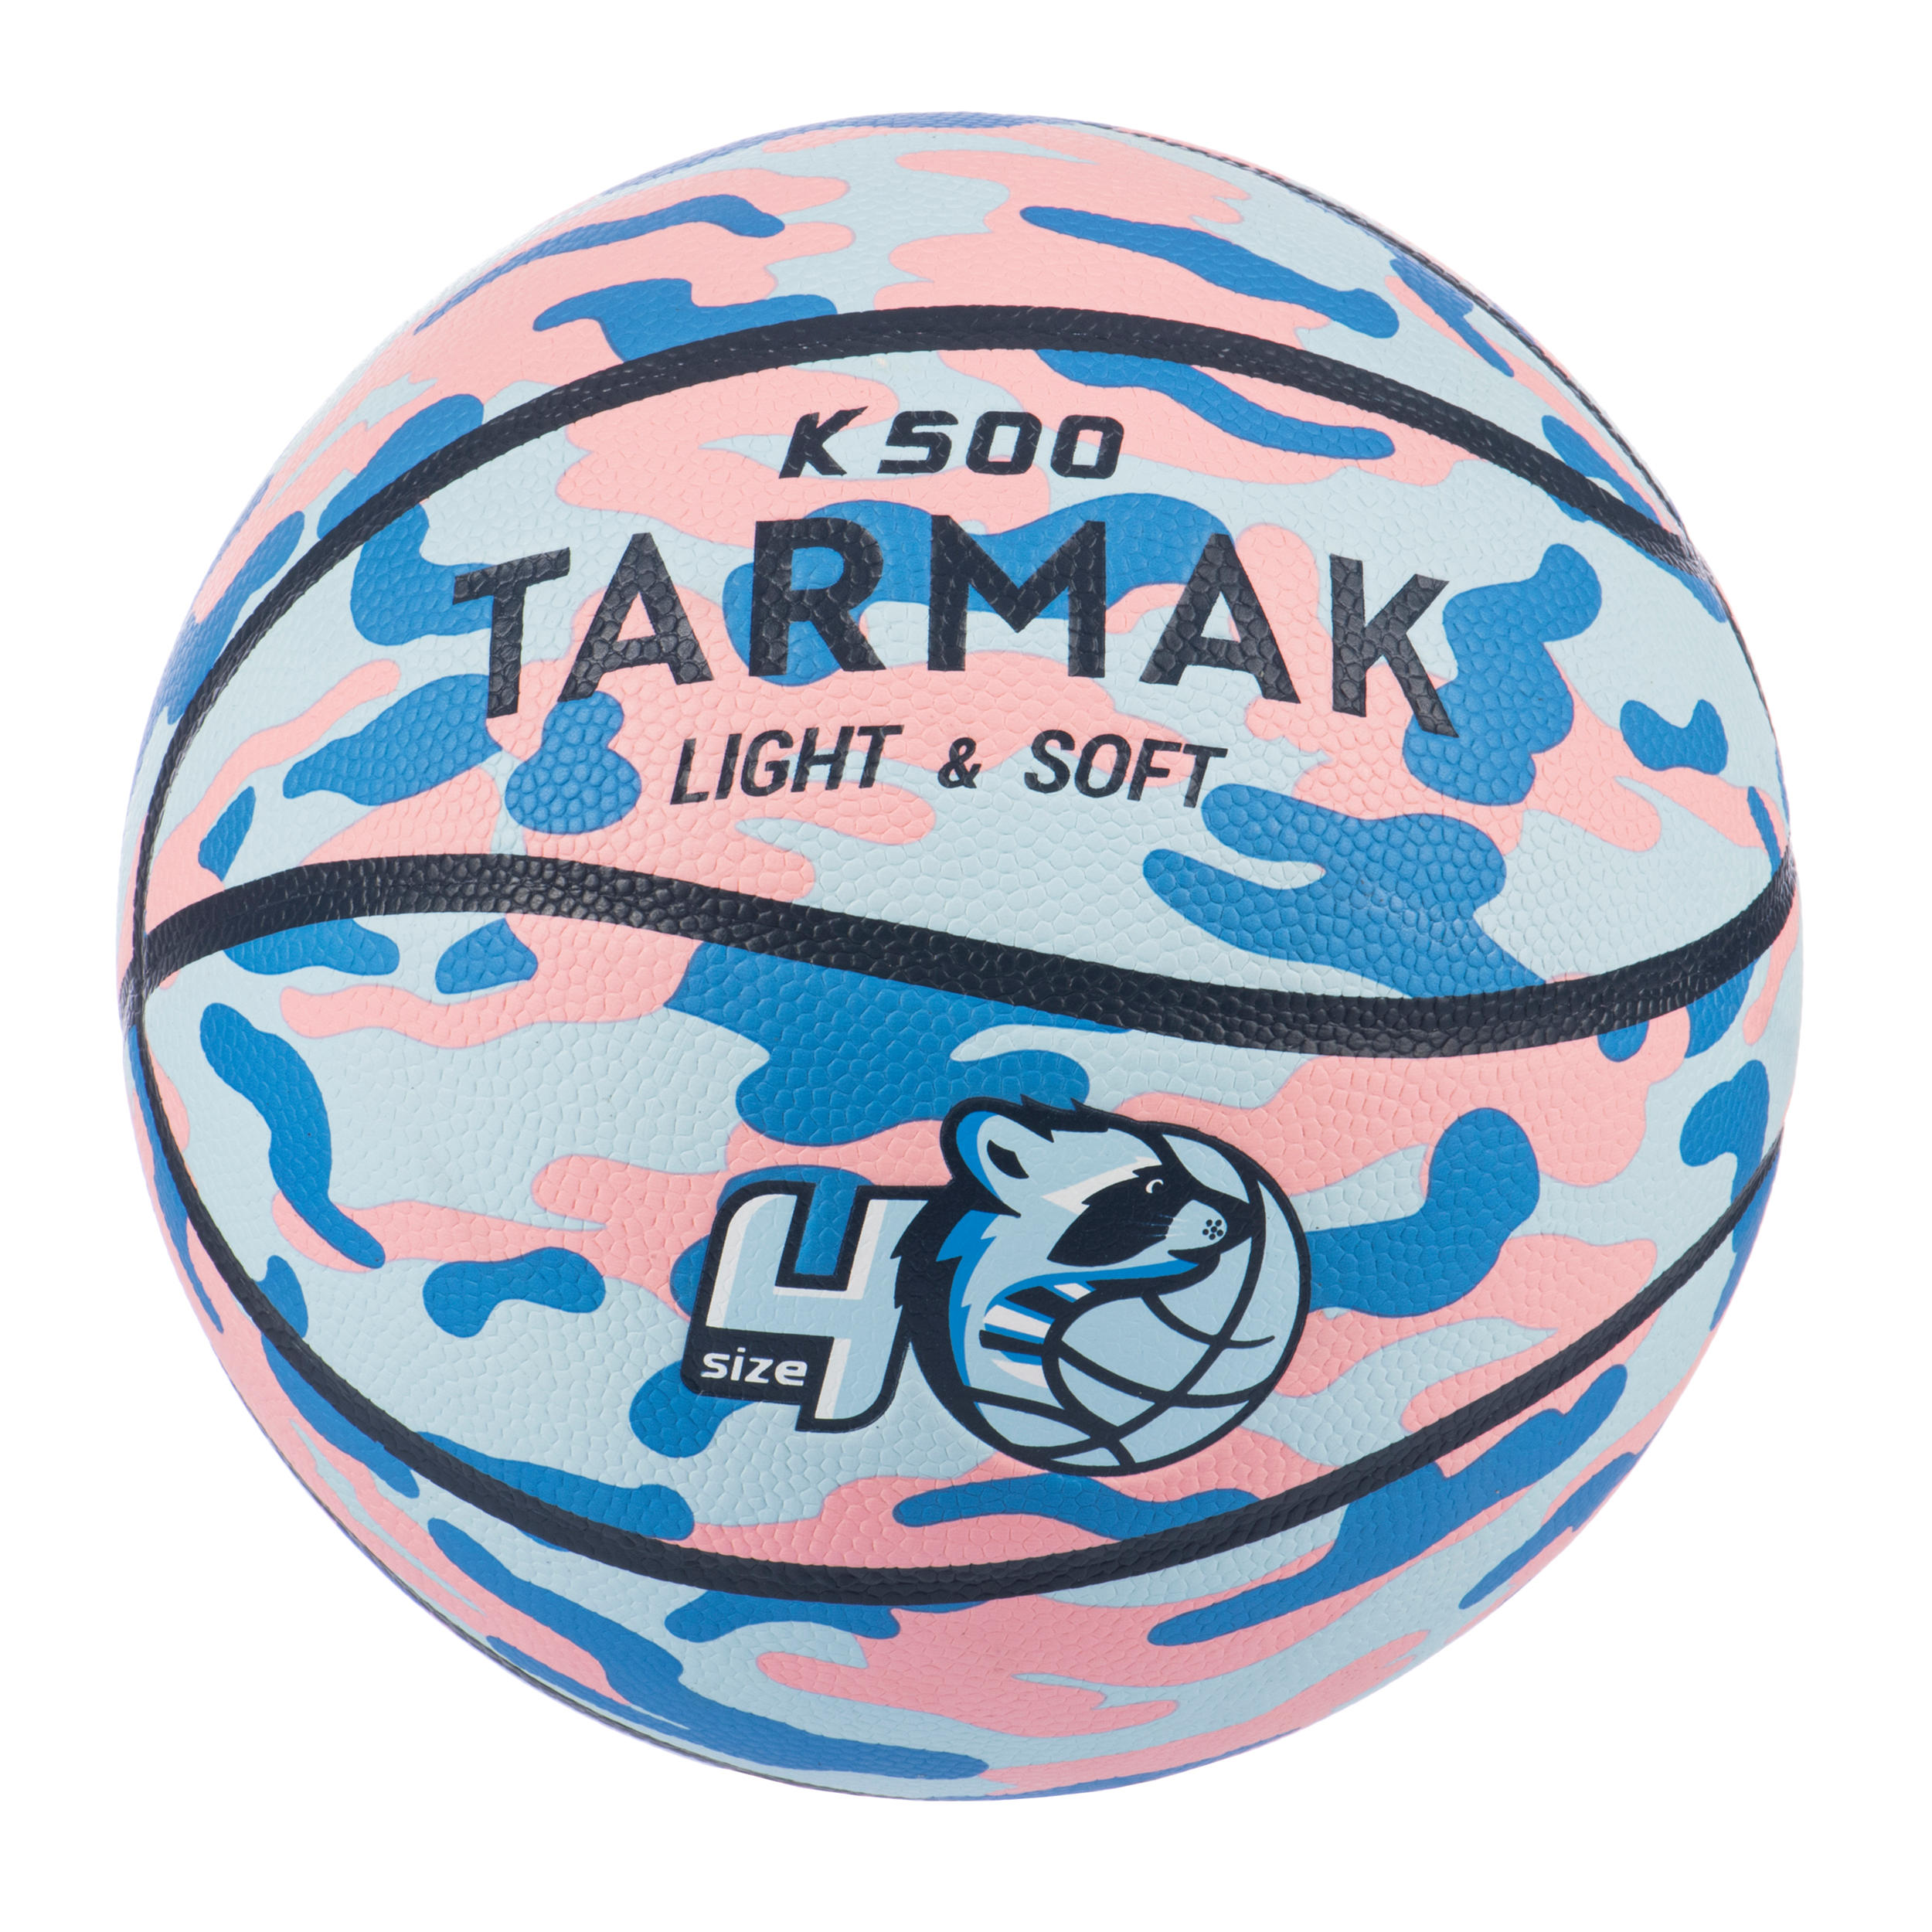 [ส่งฟรี ] บาสเกตบอลแท้ ลูกบาสเกตบอลเด็ก ลูกบาสเบอร์ 4  สำหรับเด็ก เล็ก โต ลูกบาสเก็ตบอลสำหรับเด็กๆ Aniball K500 (สีน้ำเงิน/ชมพู) Basketball kids Basketball Ball outdoor Basketball Ball size 4 Aniball K500 - Blue/Pink